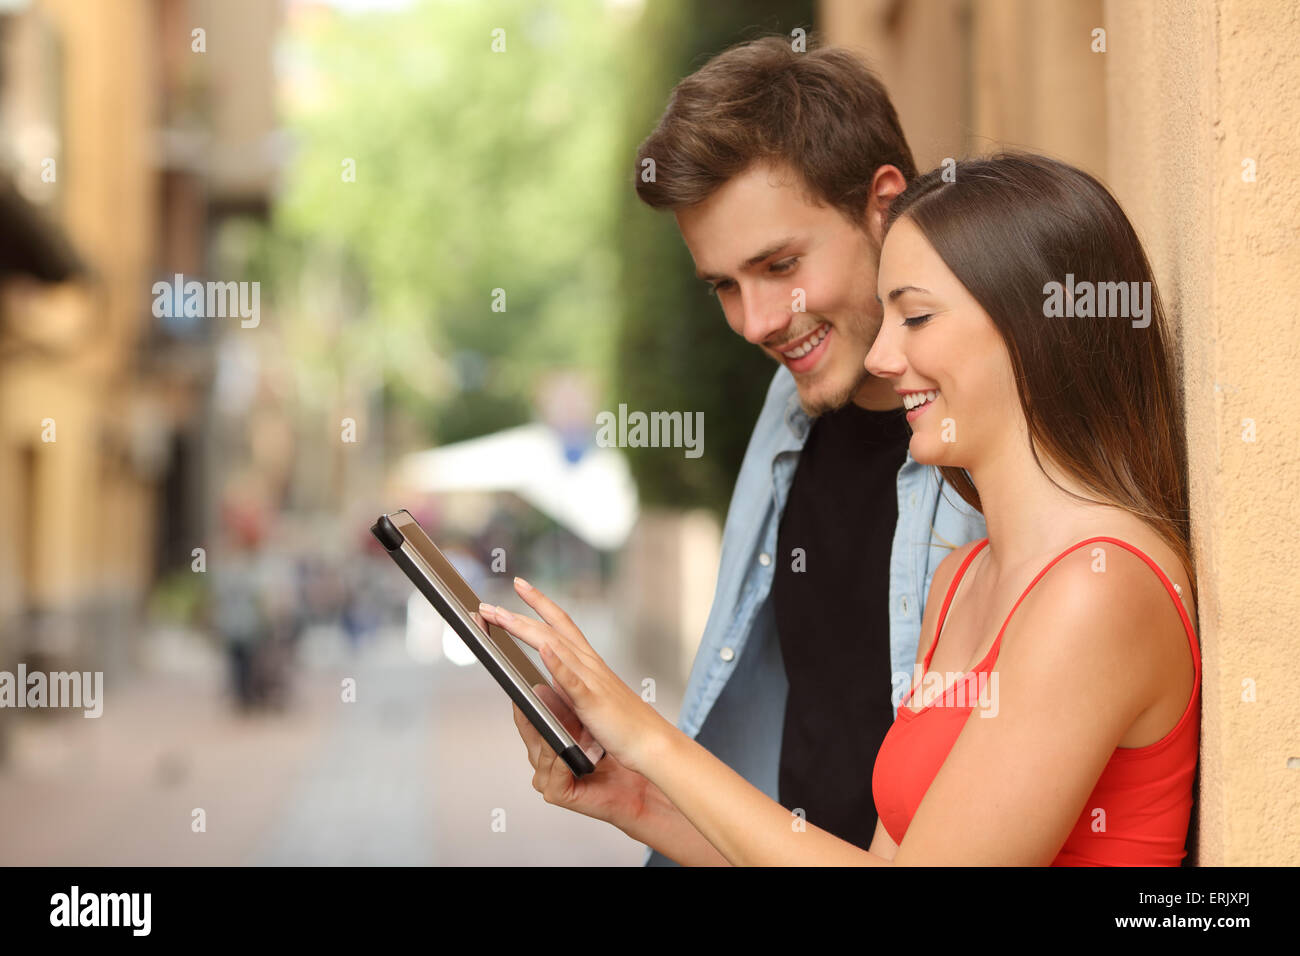 Profil d'un couple heureux parcourt une tablette dans la rue Banque D'Images